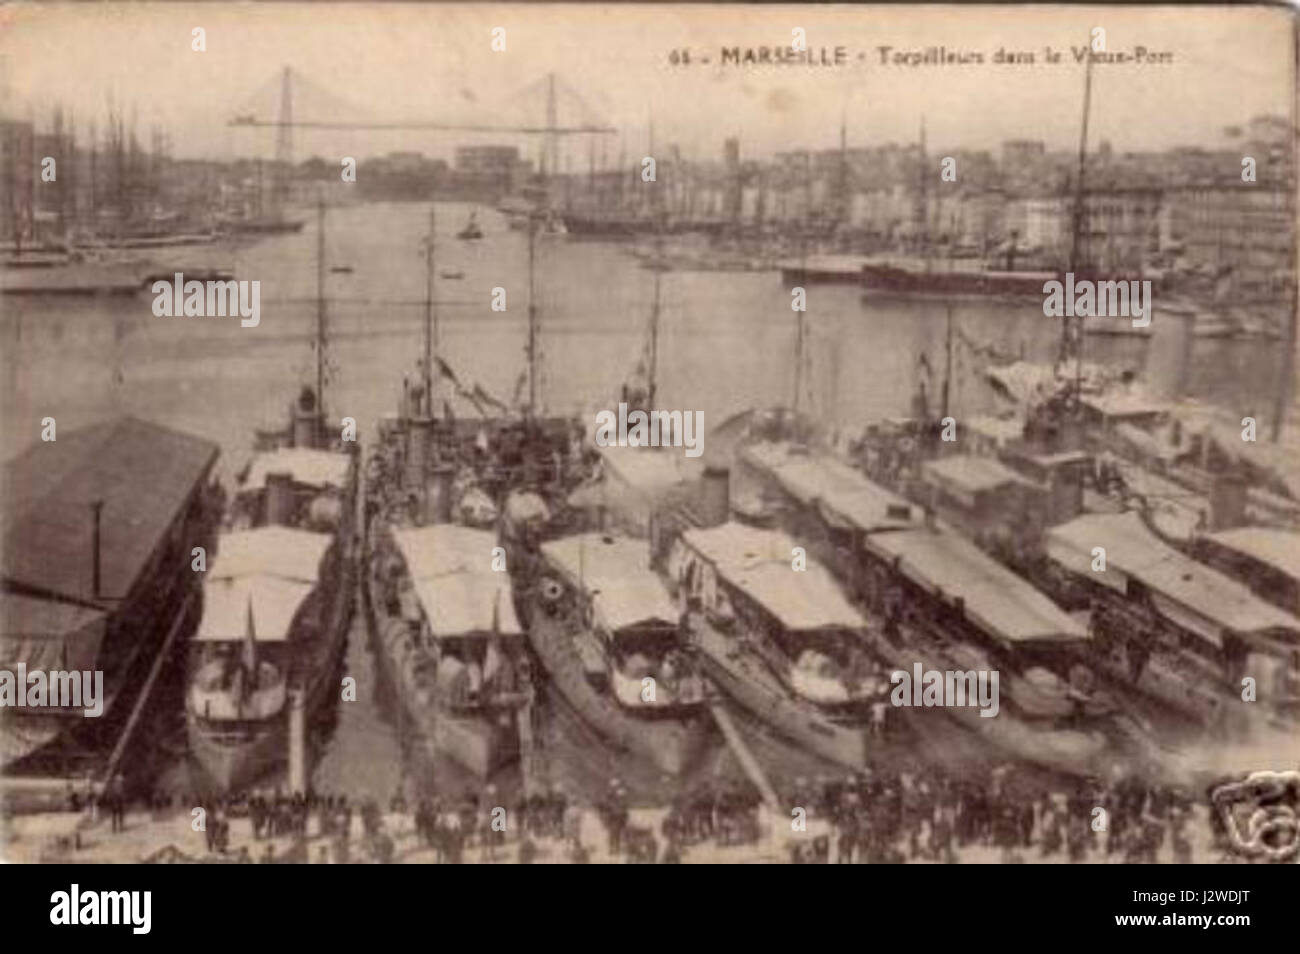 13-Marseille-Torpilleurs dans le Vieux-port-1907 Stock Photo